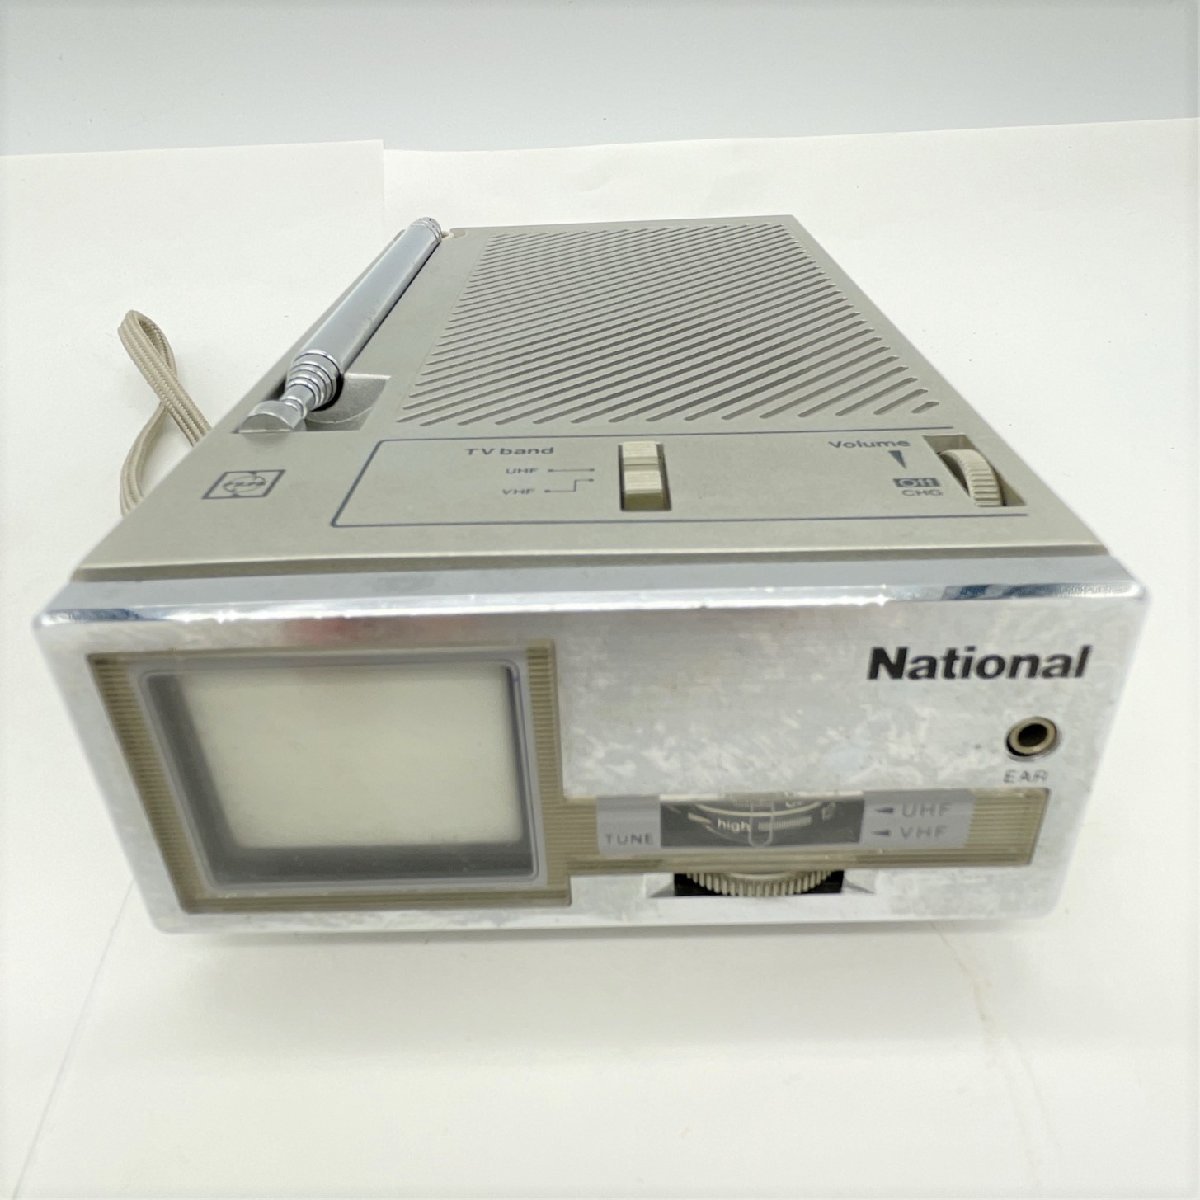 ナショナル マイクロテレビ ラジオ TV UHF VHF ジャンク TR-1010 National ポータブルテレビ 昭和レトロ 松下電器 1981年製の画像1